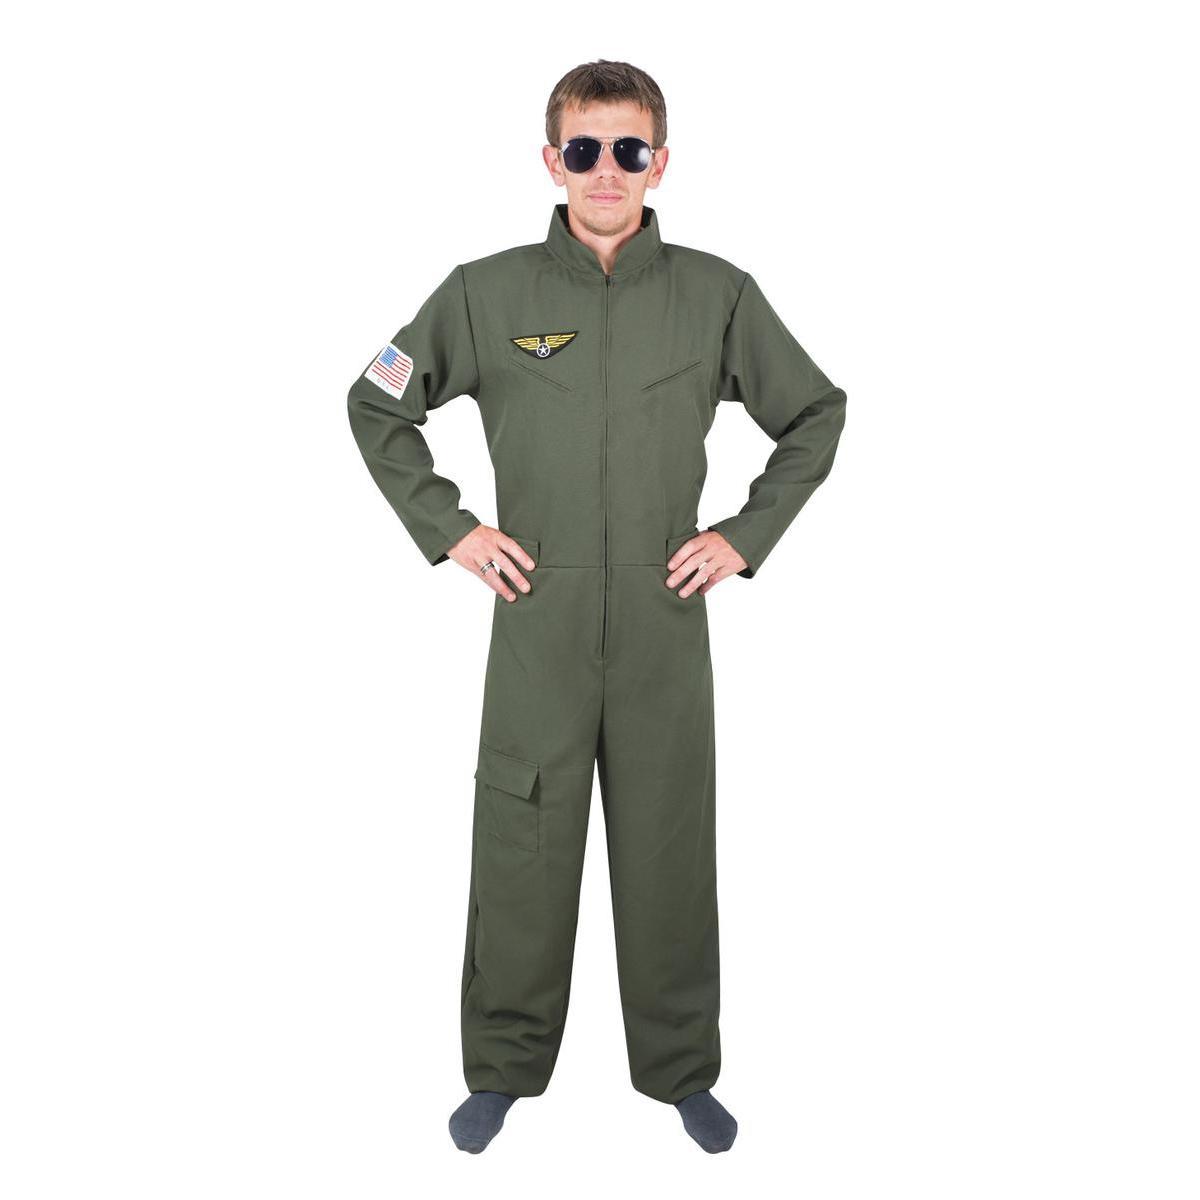 Costume adulte pilote de chasse - taille unique - L 54 x l 42 cm - Vert - PTIT CLOWN